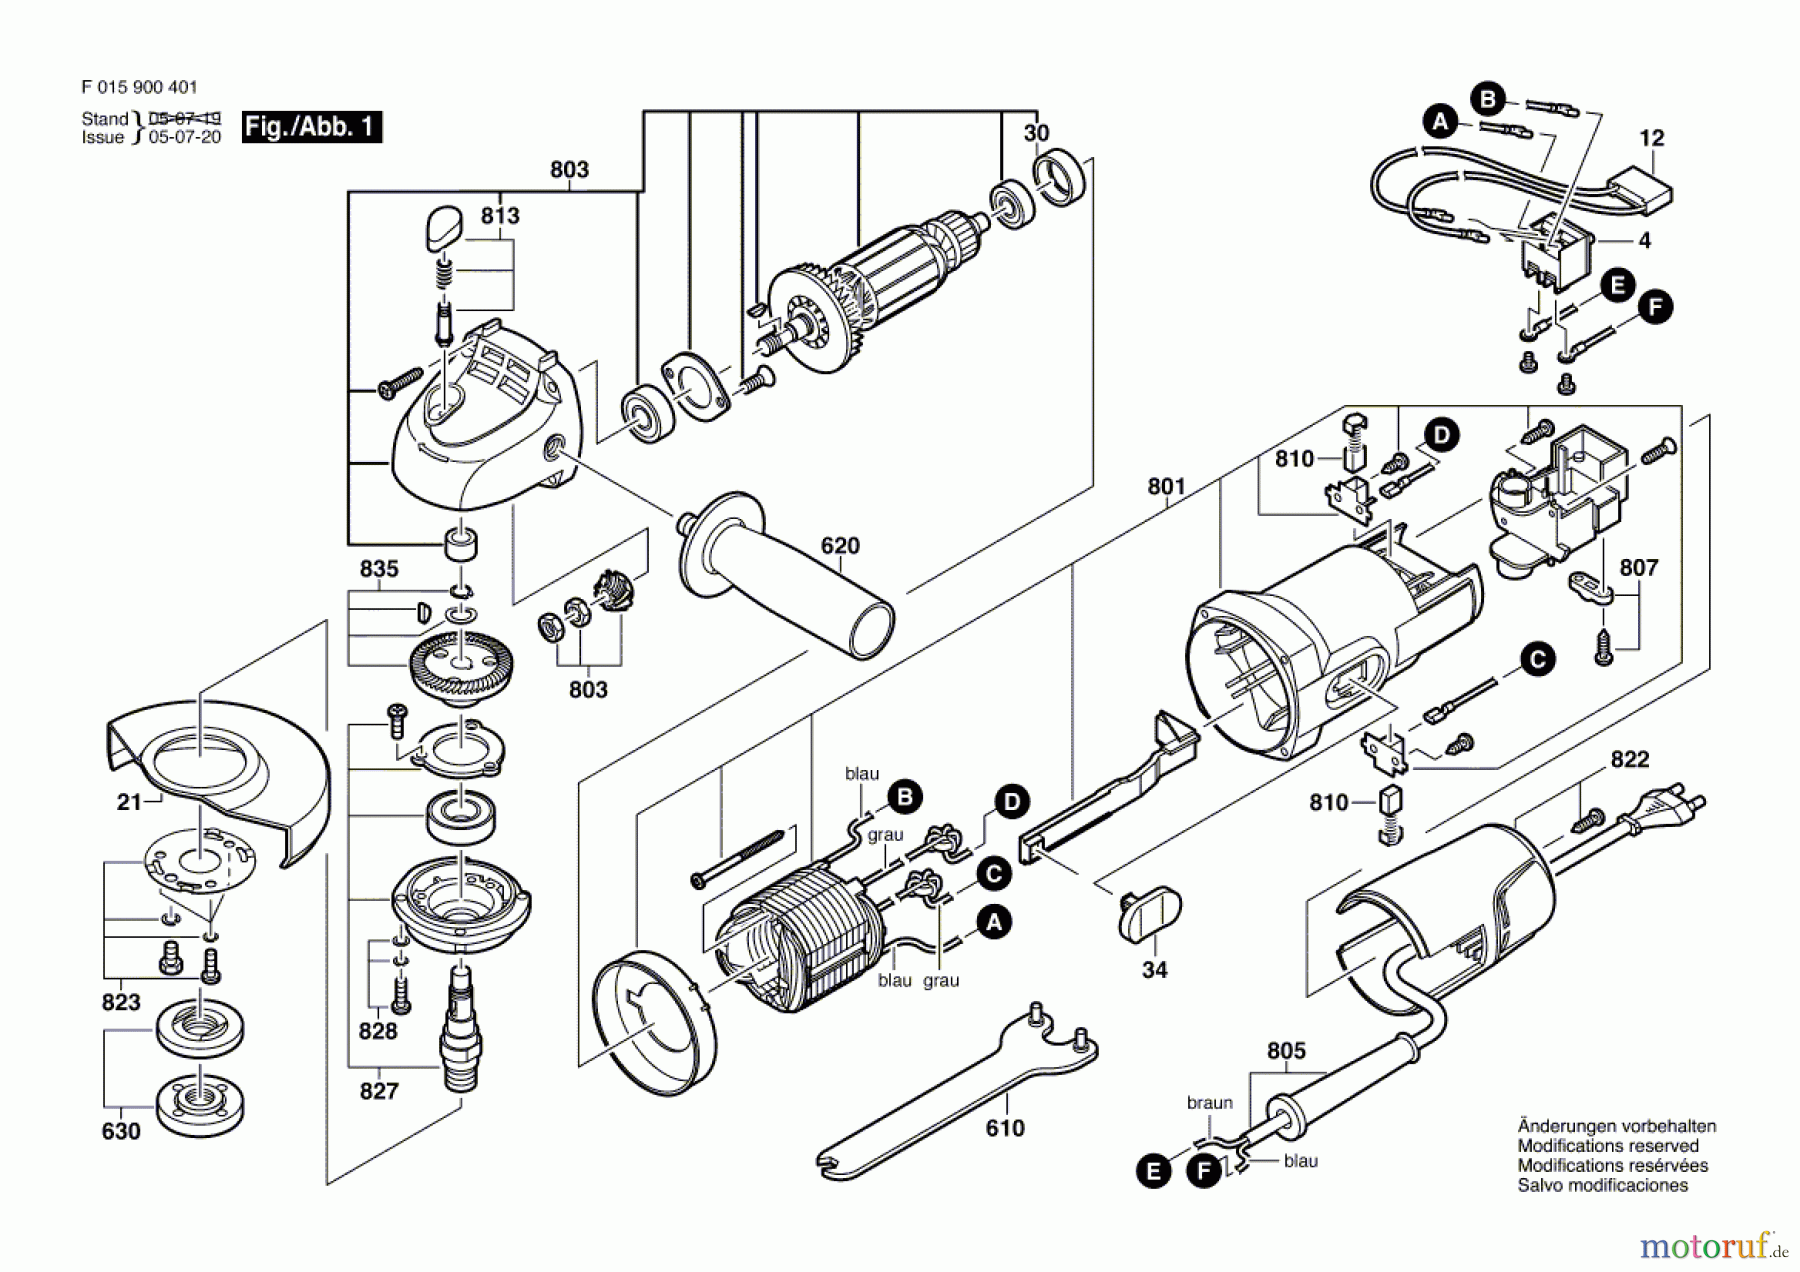  Bosch Werkzeug Winkelschleifer 9235 Seite 1